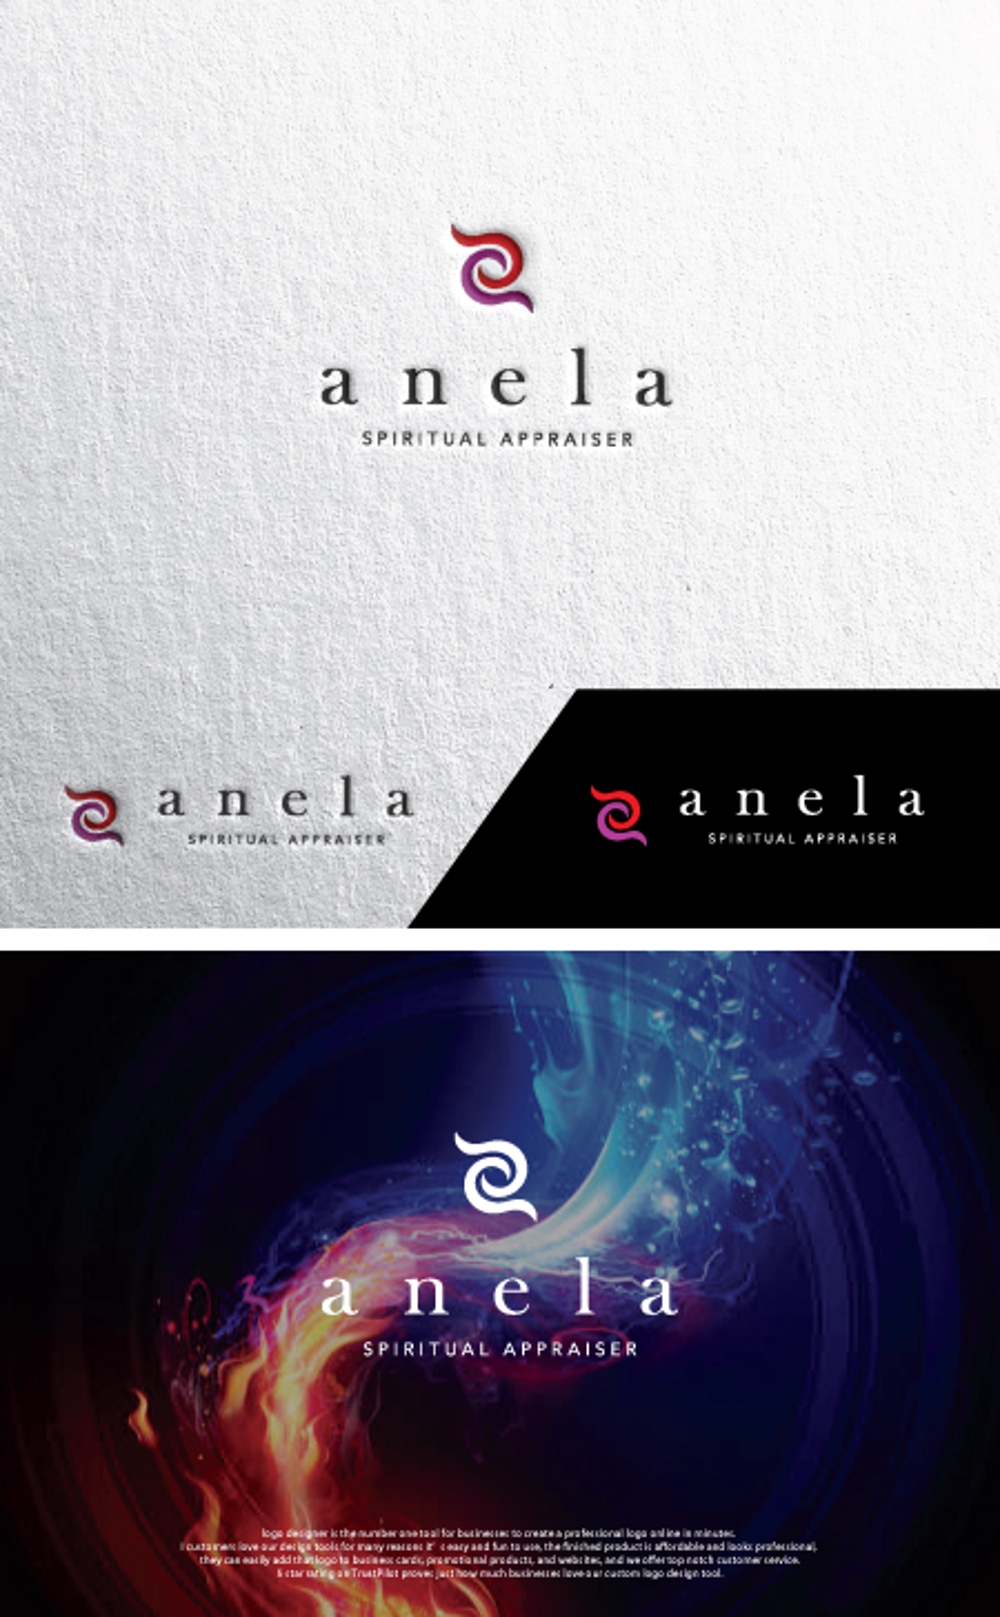 スピリチュアル鑑定士「anela」のロゴ